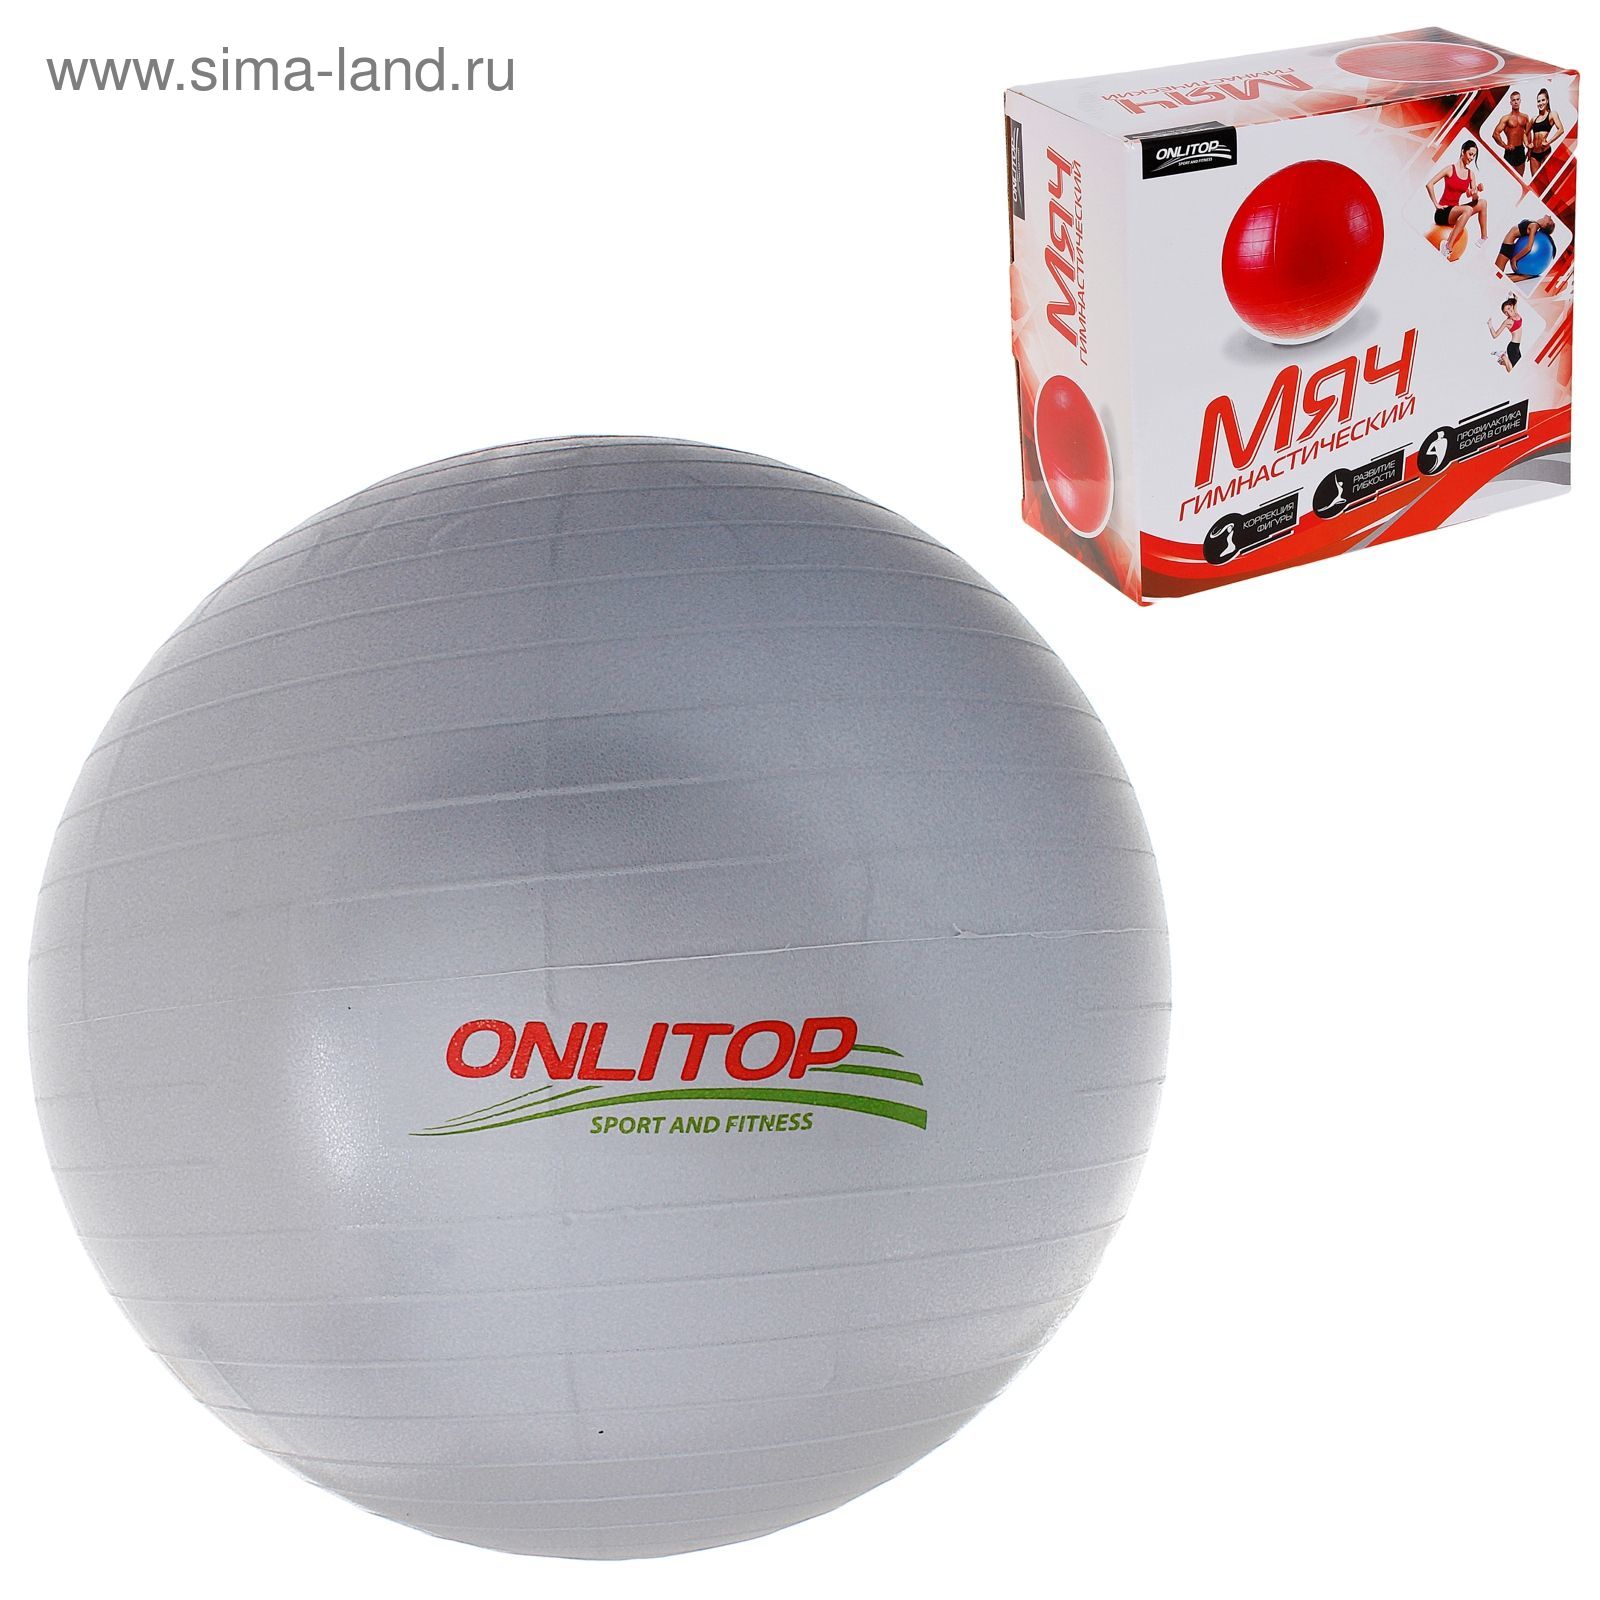 Мяч гимнастический плотный, d=65 см, 900 гр , цвета МИКС